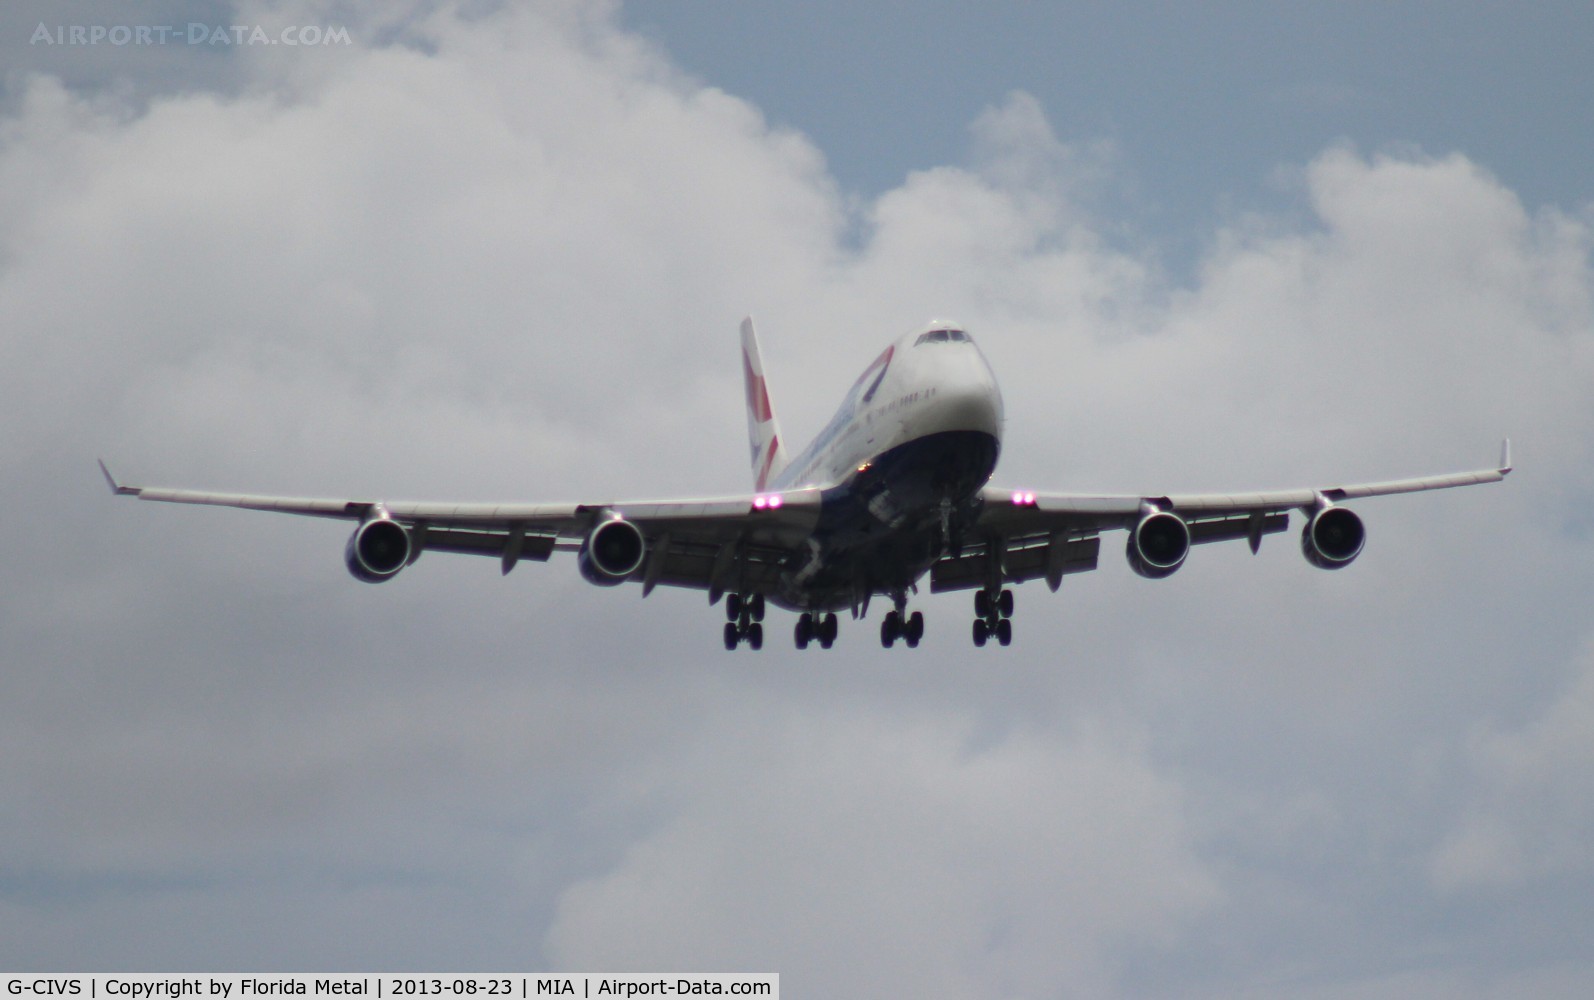 G-CIVS, 1998 Boeing 747-436 C/N 28851, British Airways 747-400